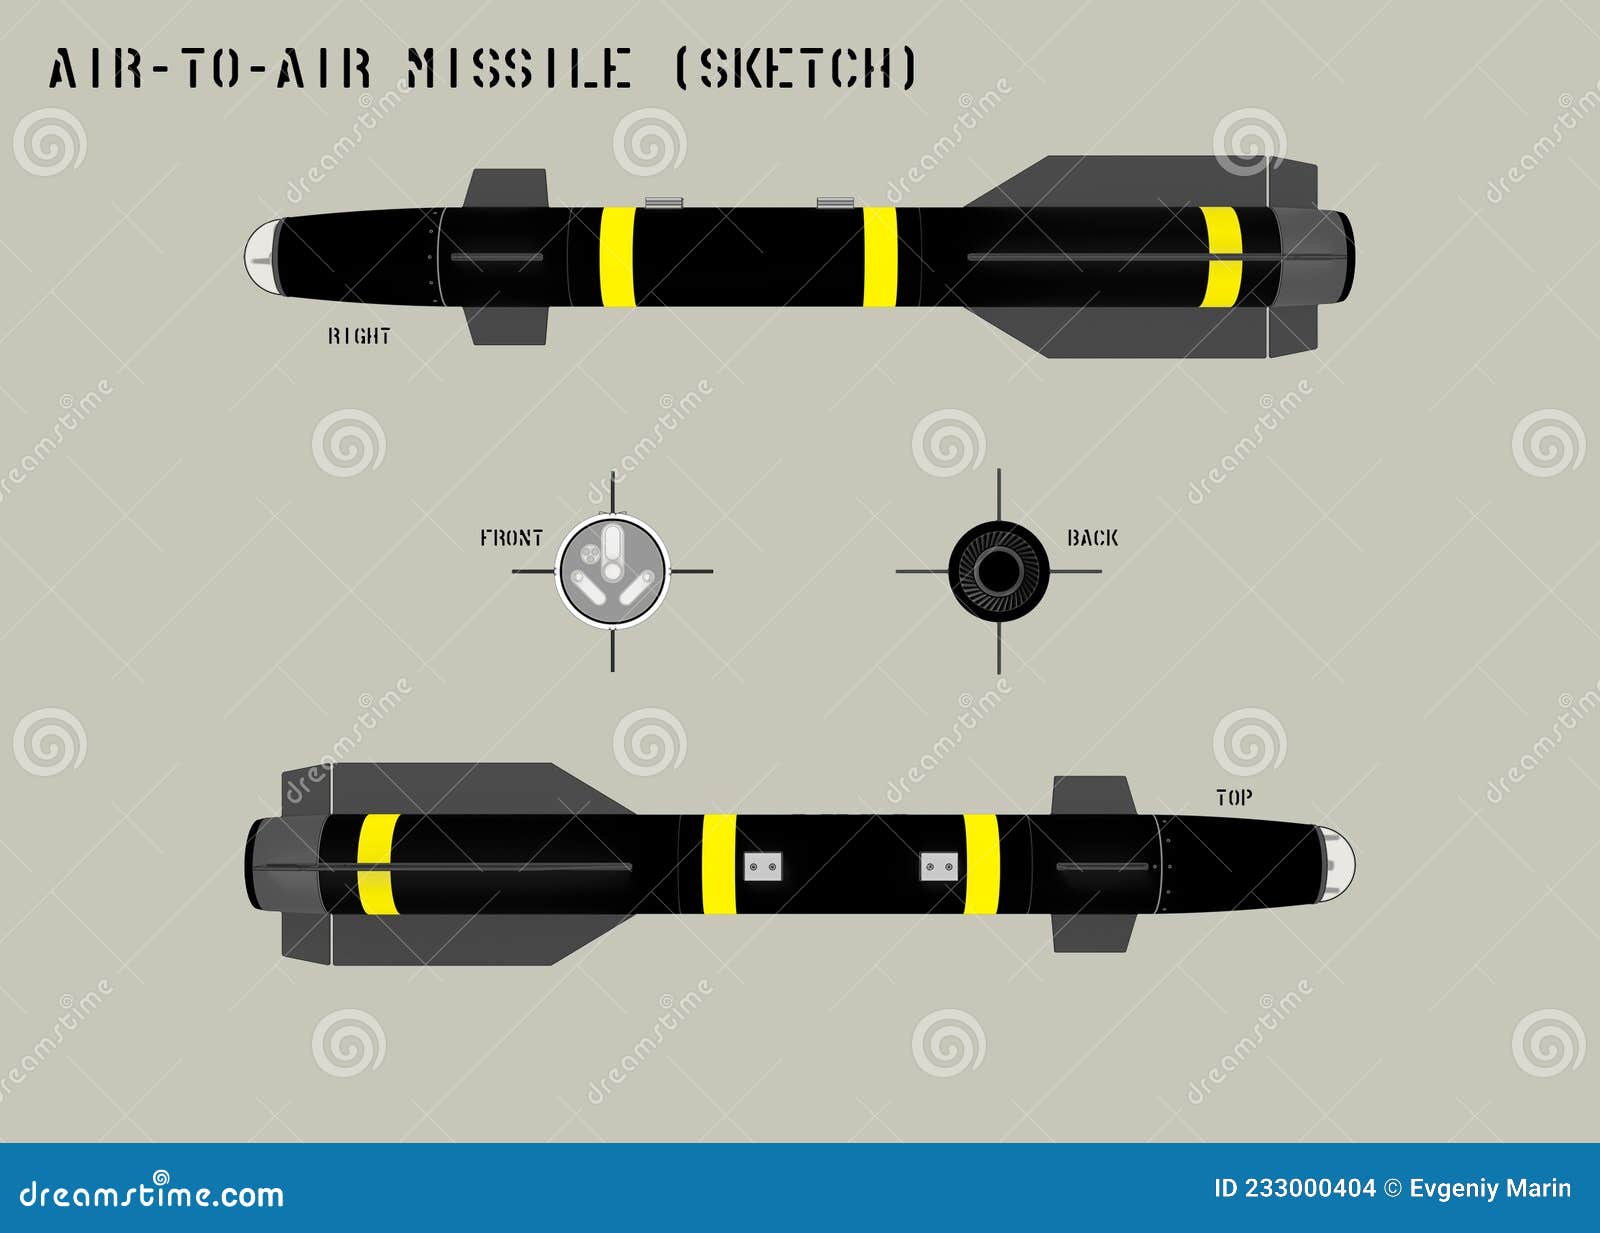 Sketch Icon In Black Missile War Black Danger Vector War Black Danger  PNG and Vector with Transparent Background for Free Download